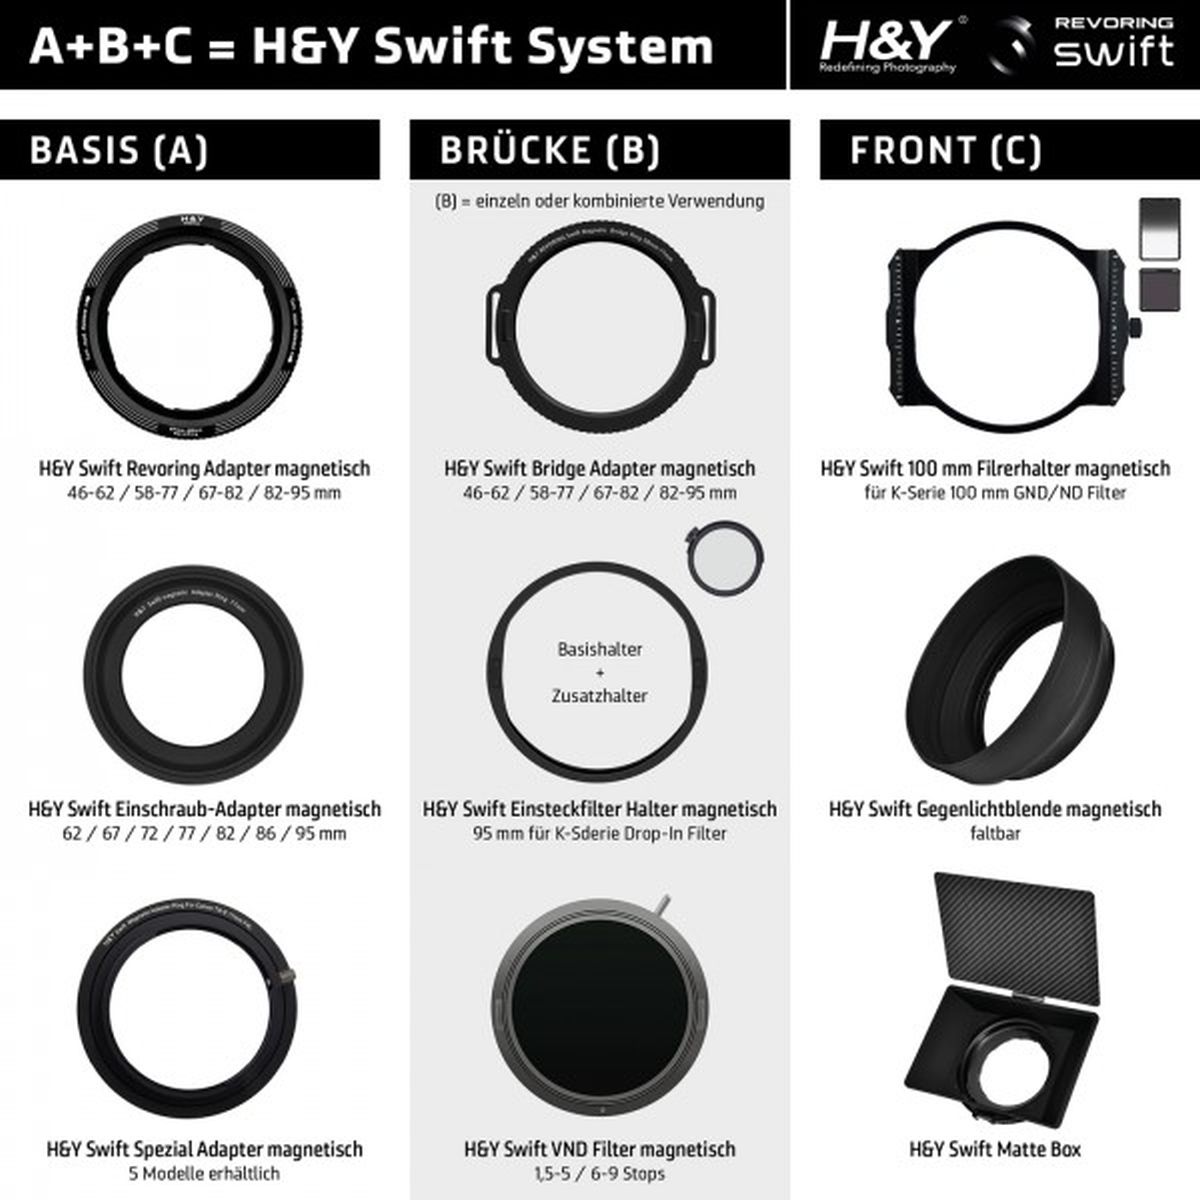 H&Y SWIFT B 95 mm Einsteckfilter Zusatzhalter magnetisch